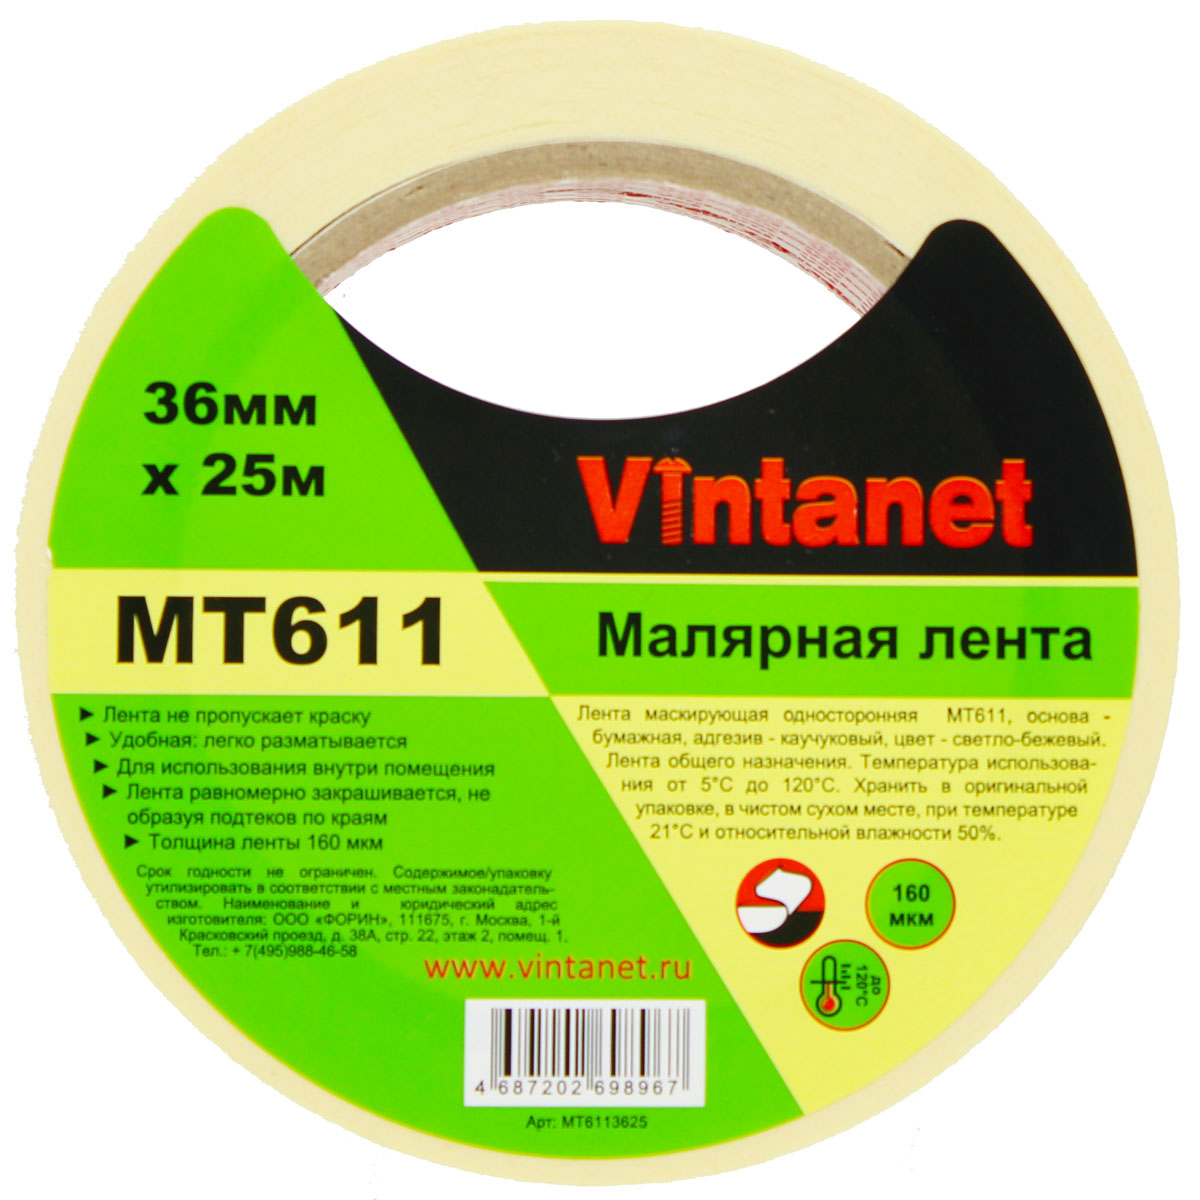 Лента малярная высокотемпературная Vintanet MT611, 120 С, 160 мкм, 36мм х 25м, MT6113625 малярная лента для деликатных поверхностей rollingdog